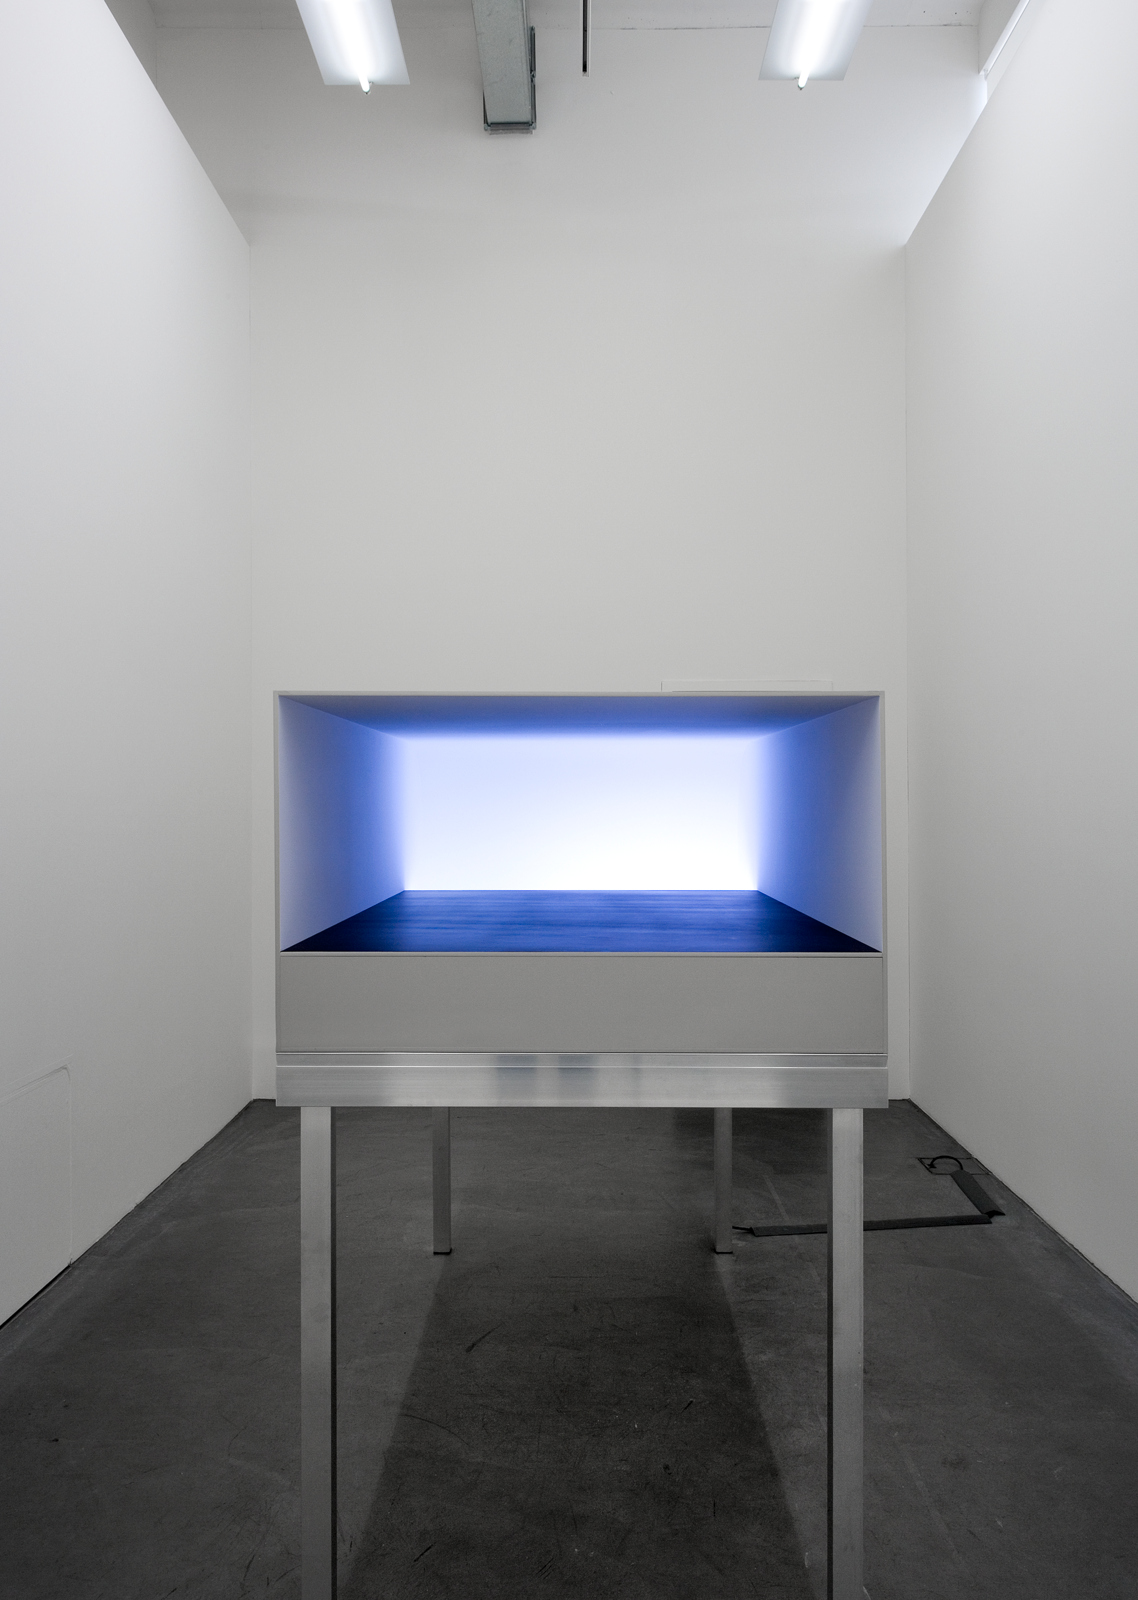 Carsten Nicolai / "static fades", exhibition view, Haus Konstruktiv, Zürich  / 2009